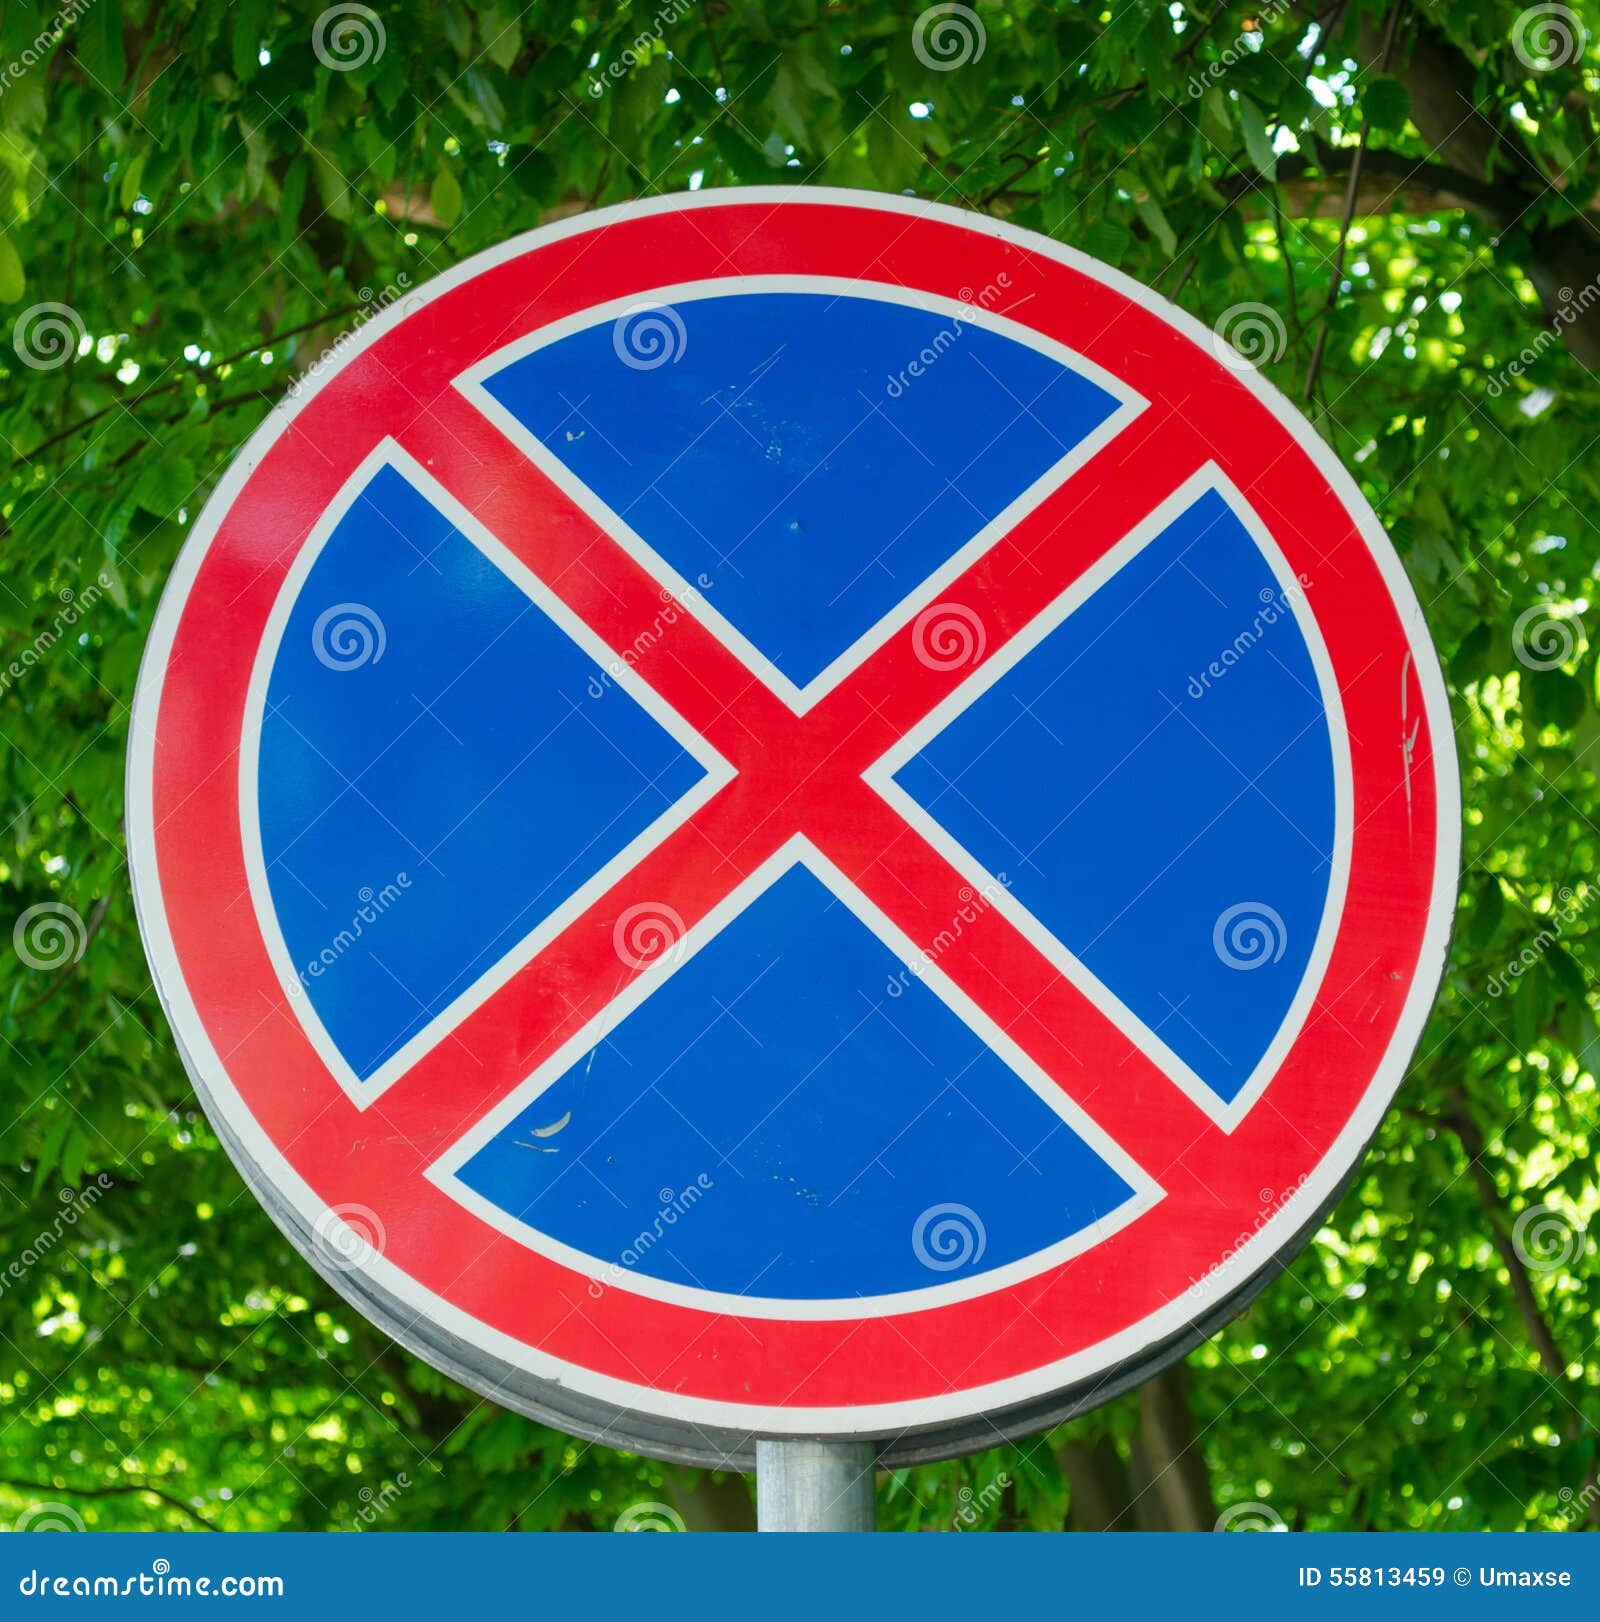 Дорожный знак круг синий перечеркнутый. Дорожный знак круглый с красным крестом. Круглые круглые дорожные знаки. Круглые дорожные знаки с крестом. Круглый синий знак с красным крестом.